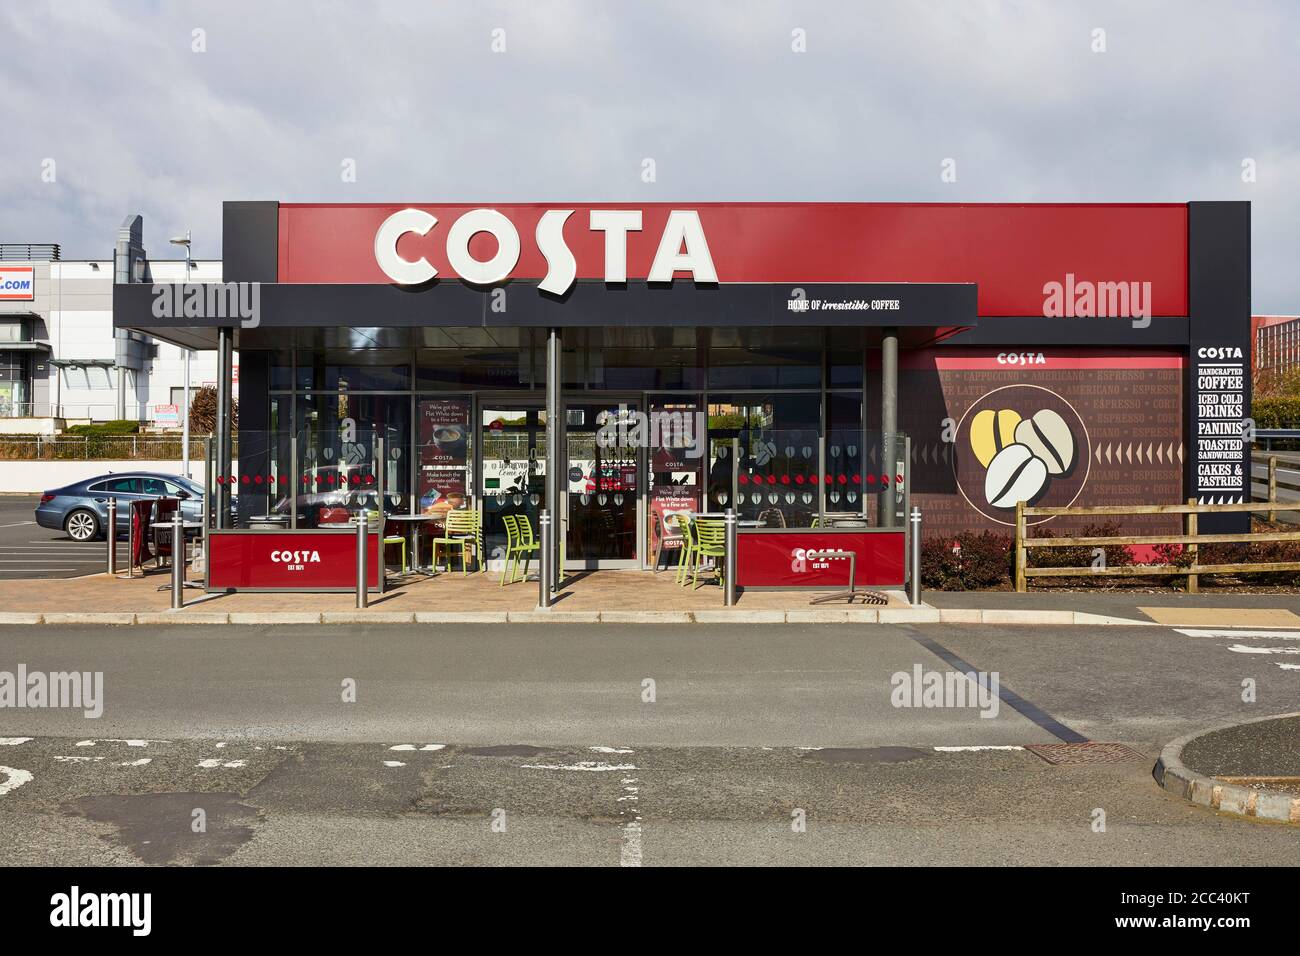 Costa. Abbey Retail Park, Belfast, Belfast, Irlande. Architecte: N/A, 2019. Banque D'Images